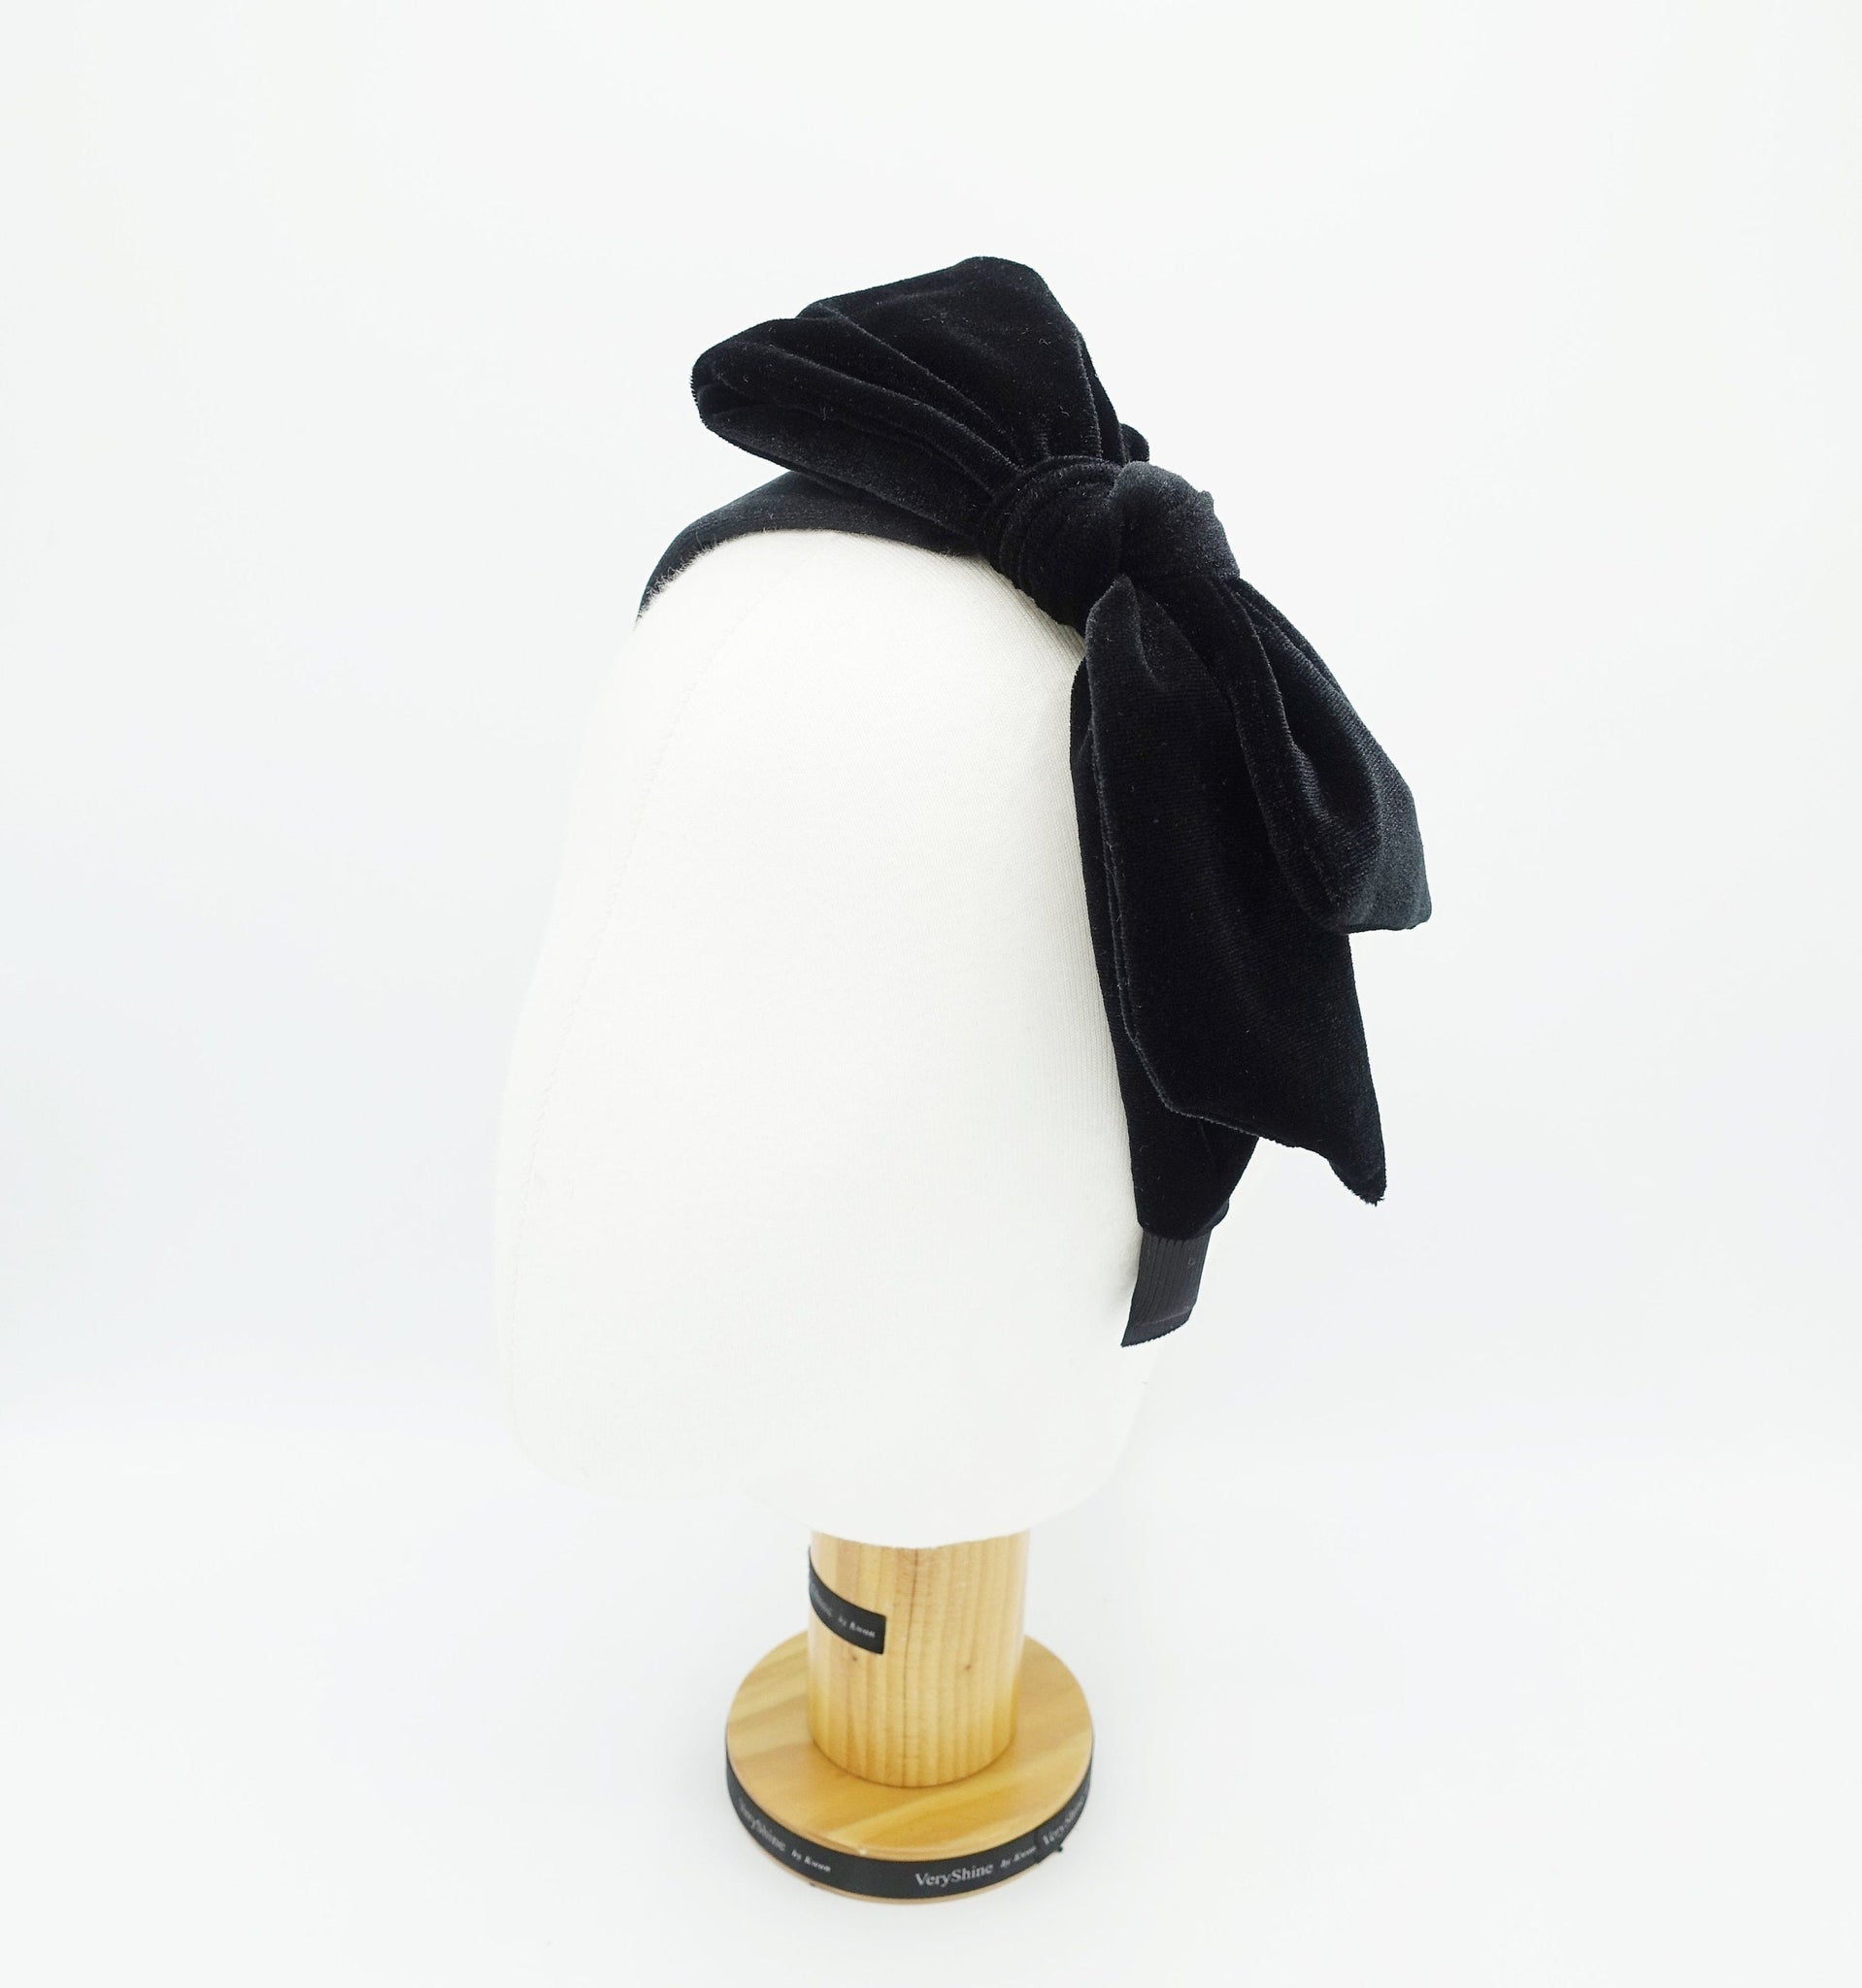 veryshine.com velvet bow knotted headband basic Fall Winter hairband for women